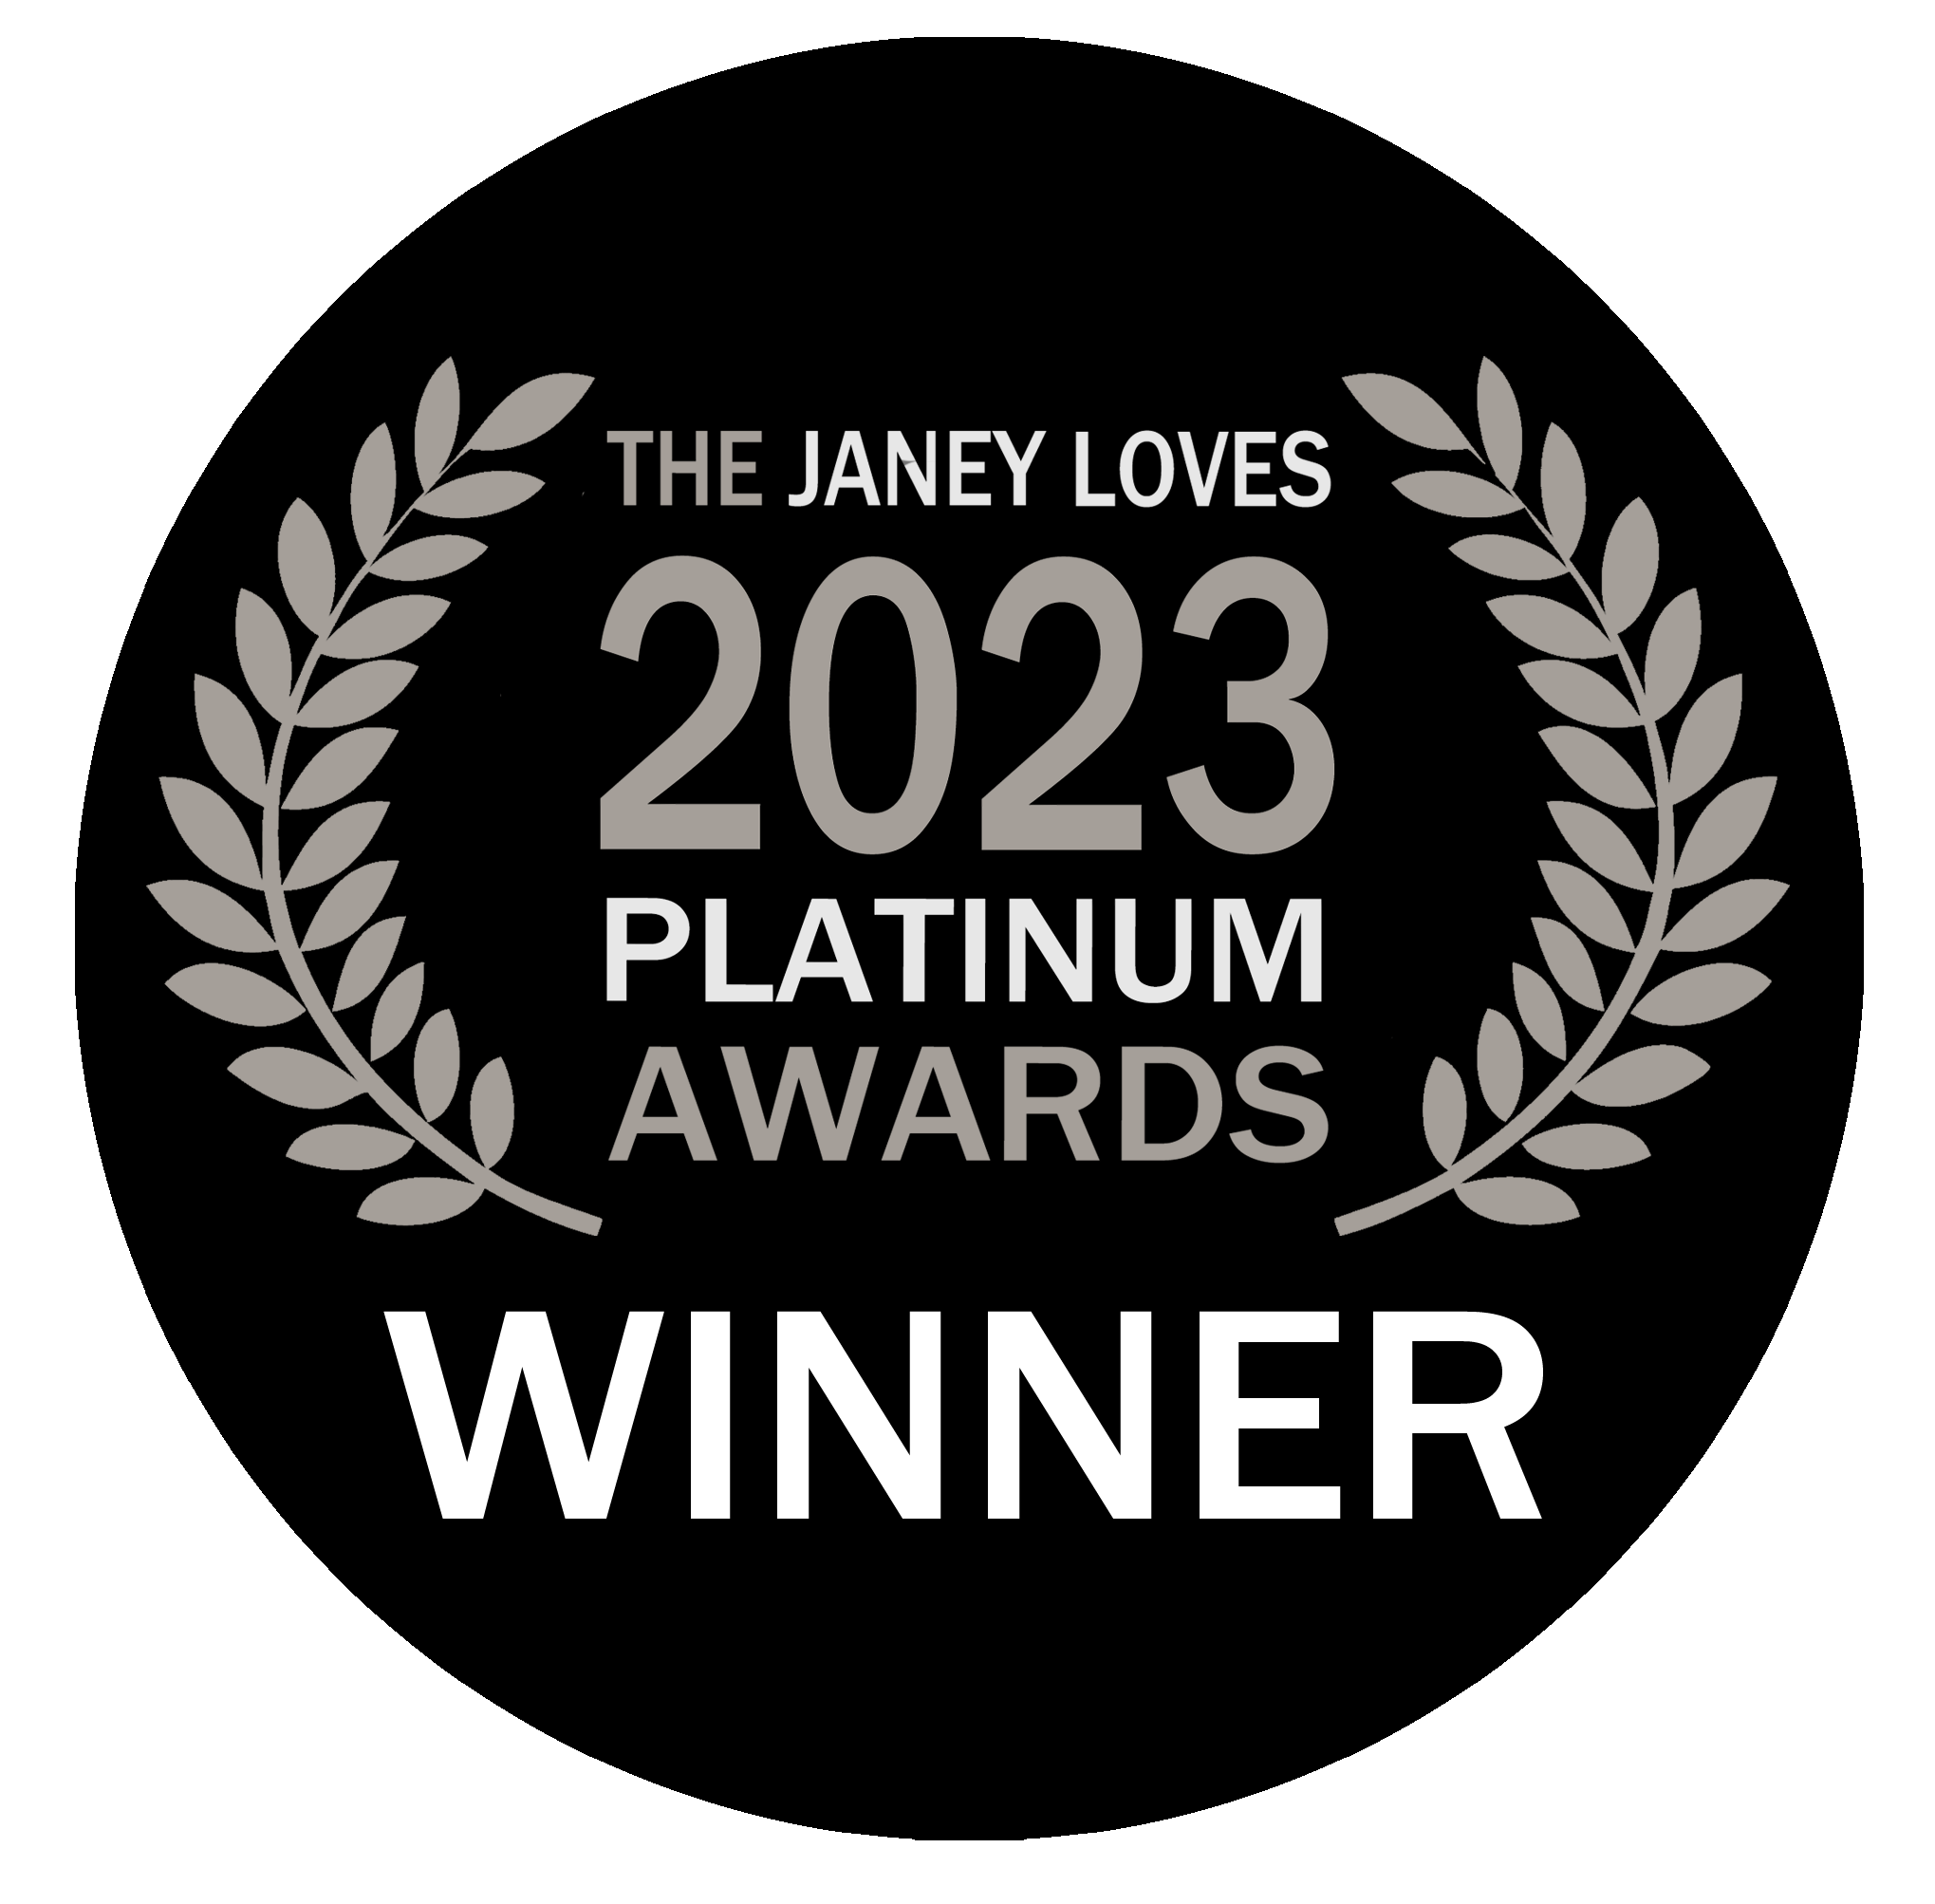 The Janey Loves 2023 Platinum Awards - WINNER